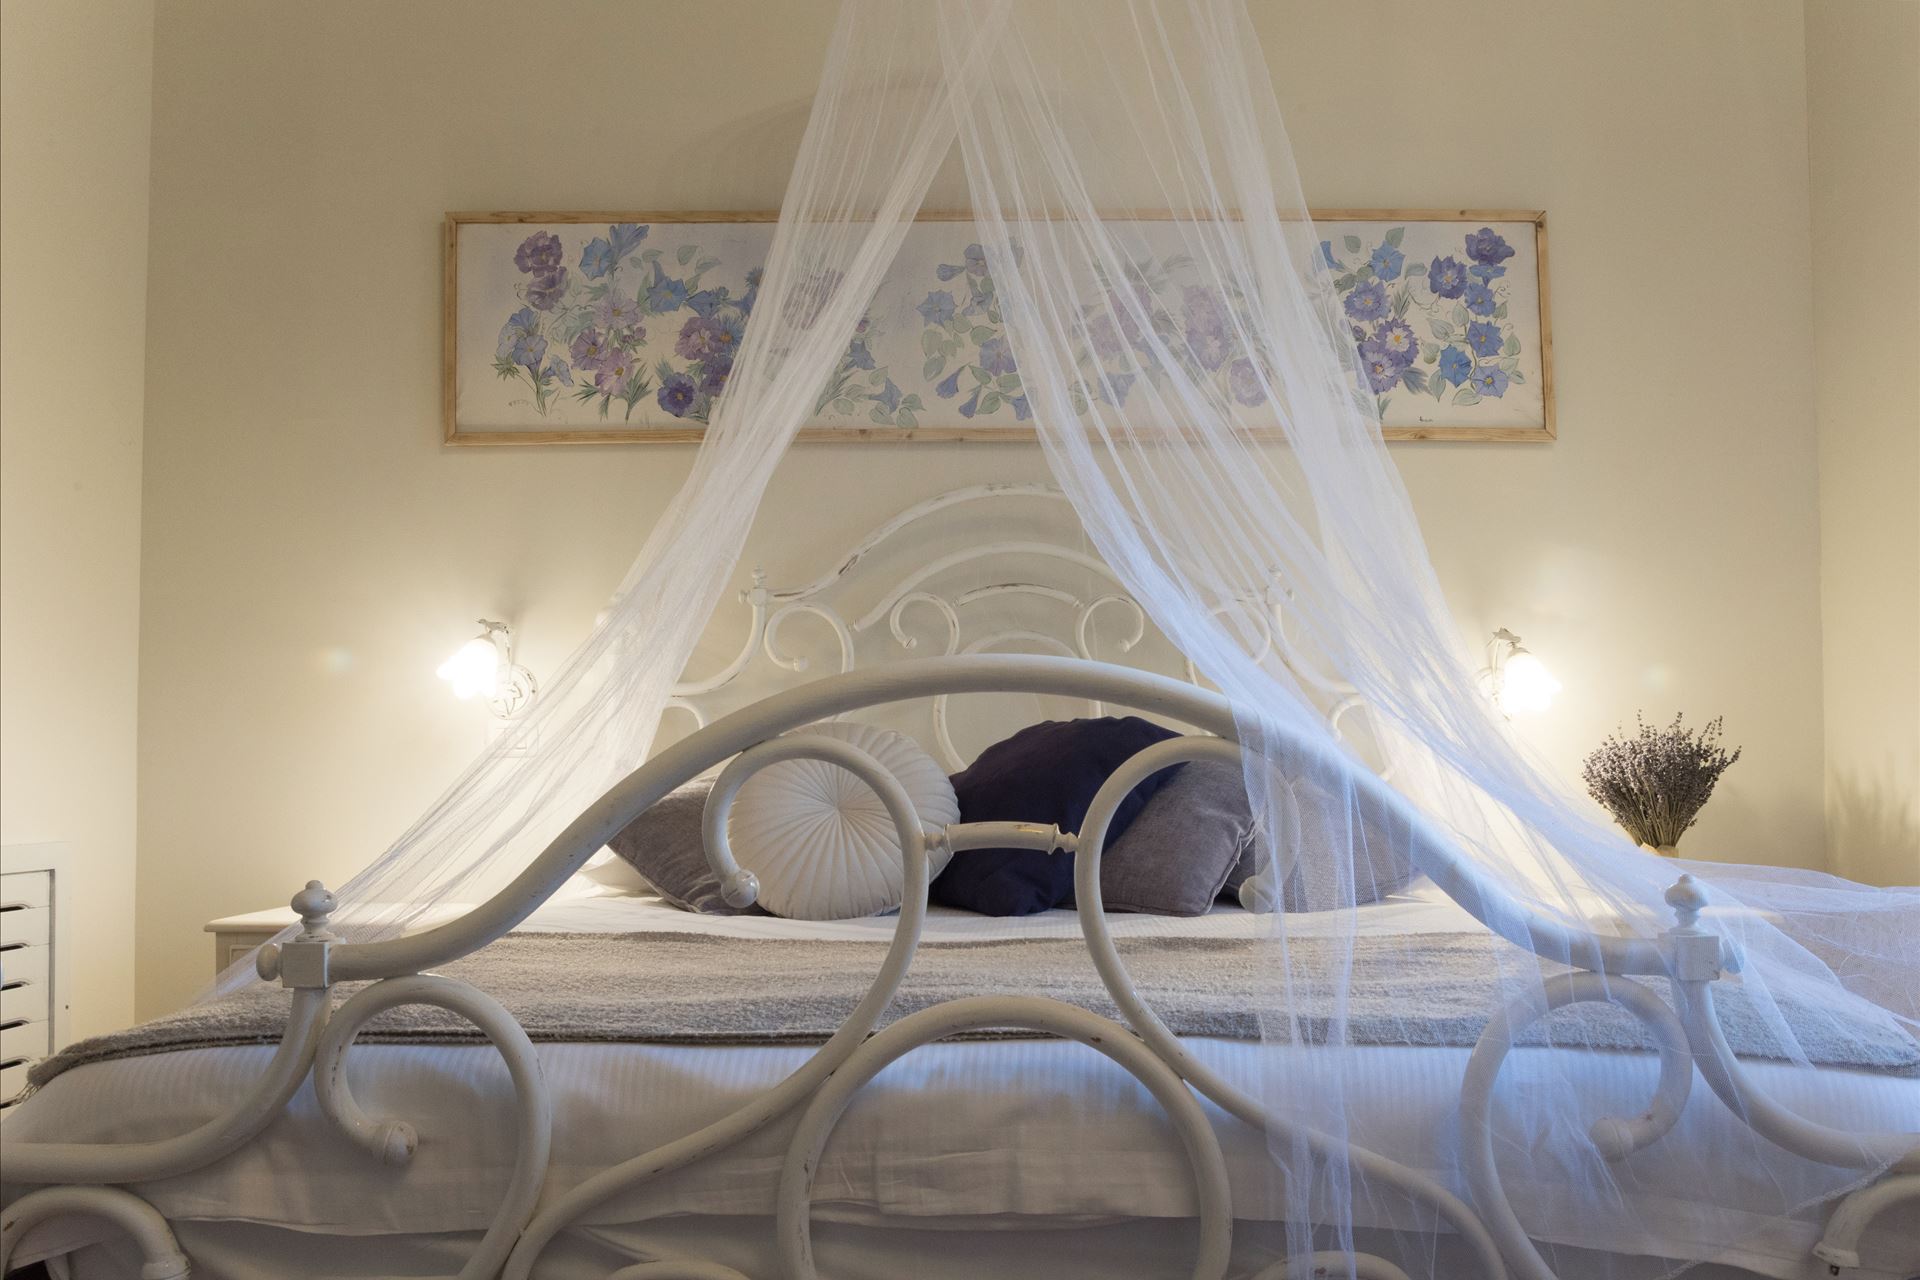 La camera romantica si sviluppa in un unico ambiente, accogliente e ben illuminato dalla finestra con vista sul rigoglioso orto.